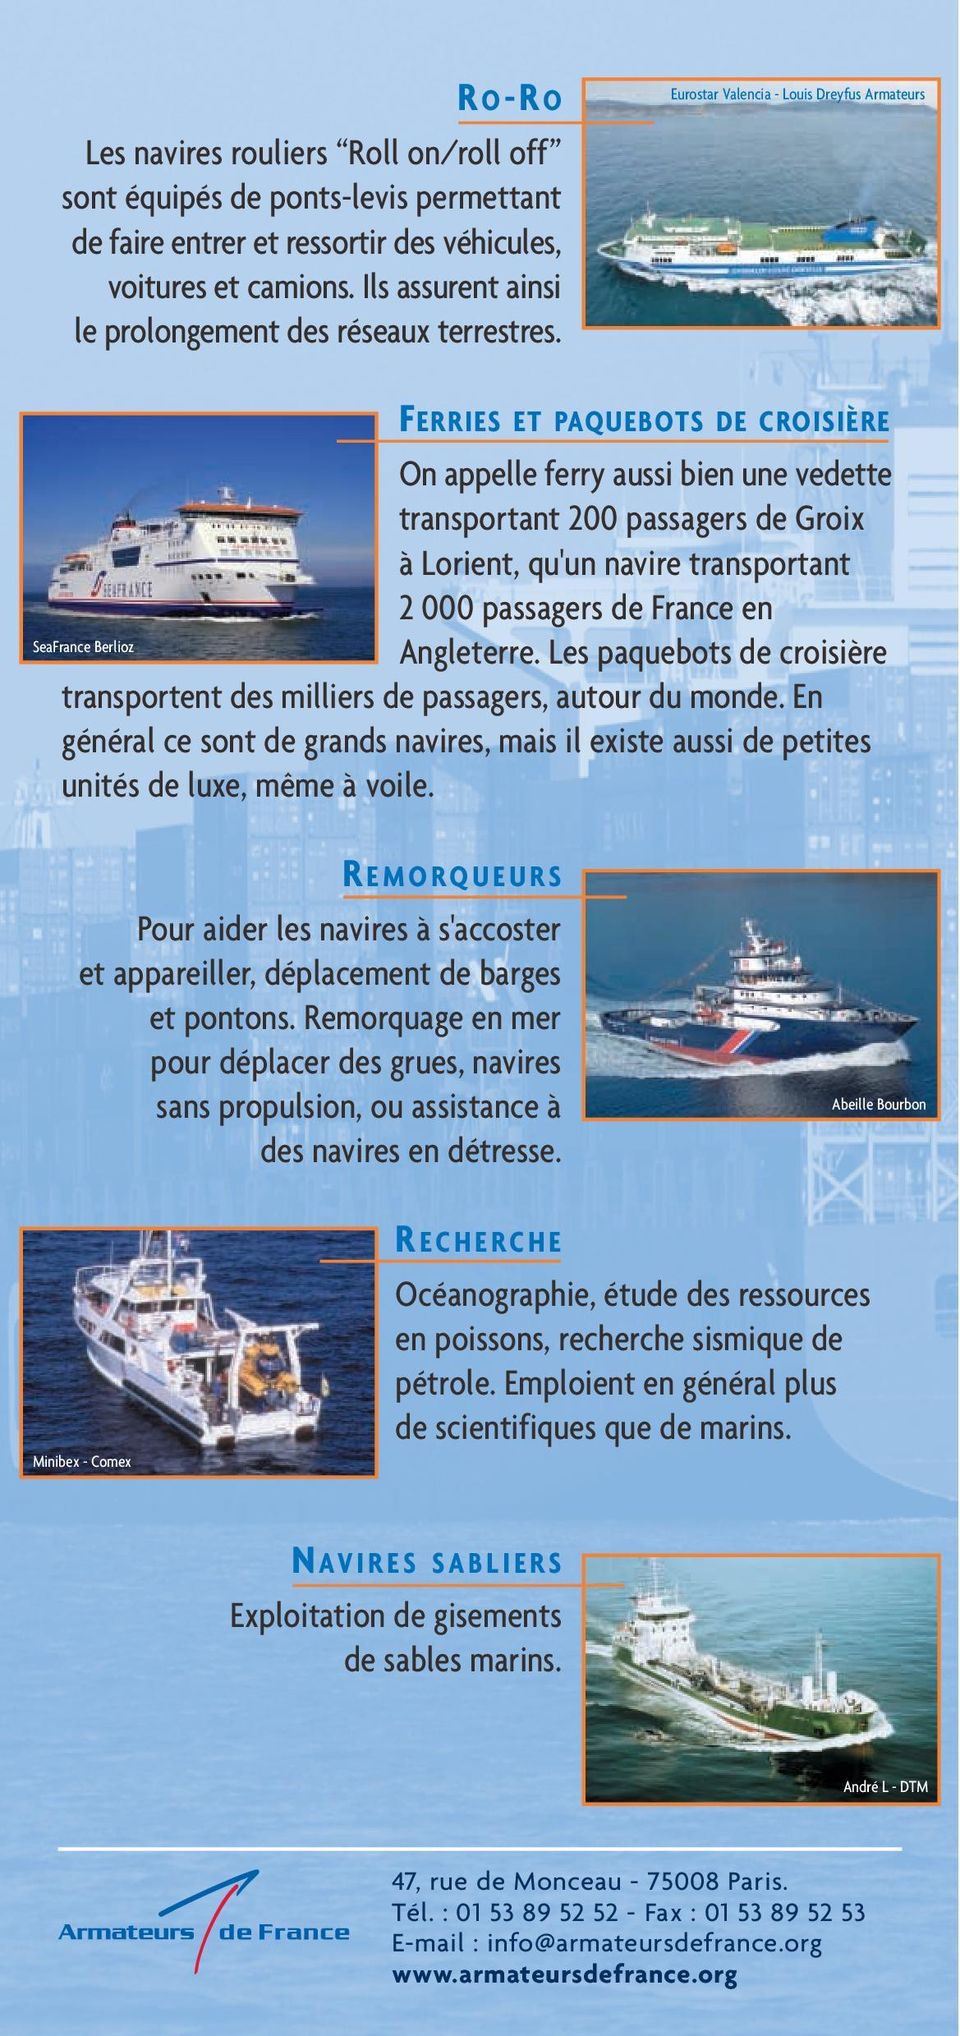 Eurostar Valencia - Louis Dreyfus Armateurs FERRIES ET PAQUEBOTS DE CROISIÈRE On appelle ferry aussi bien une vedette transportant 200 passagers de Groix à Lorient, qu'un navire transportant 2 000